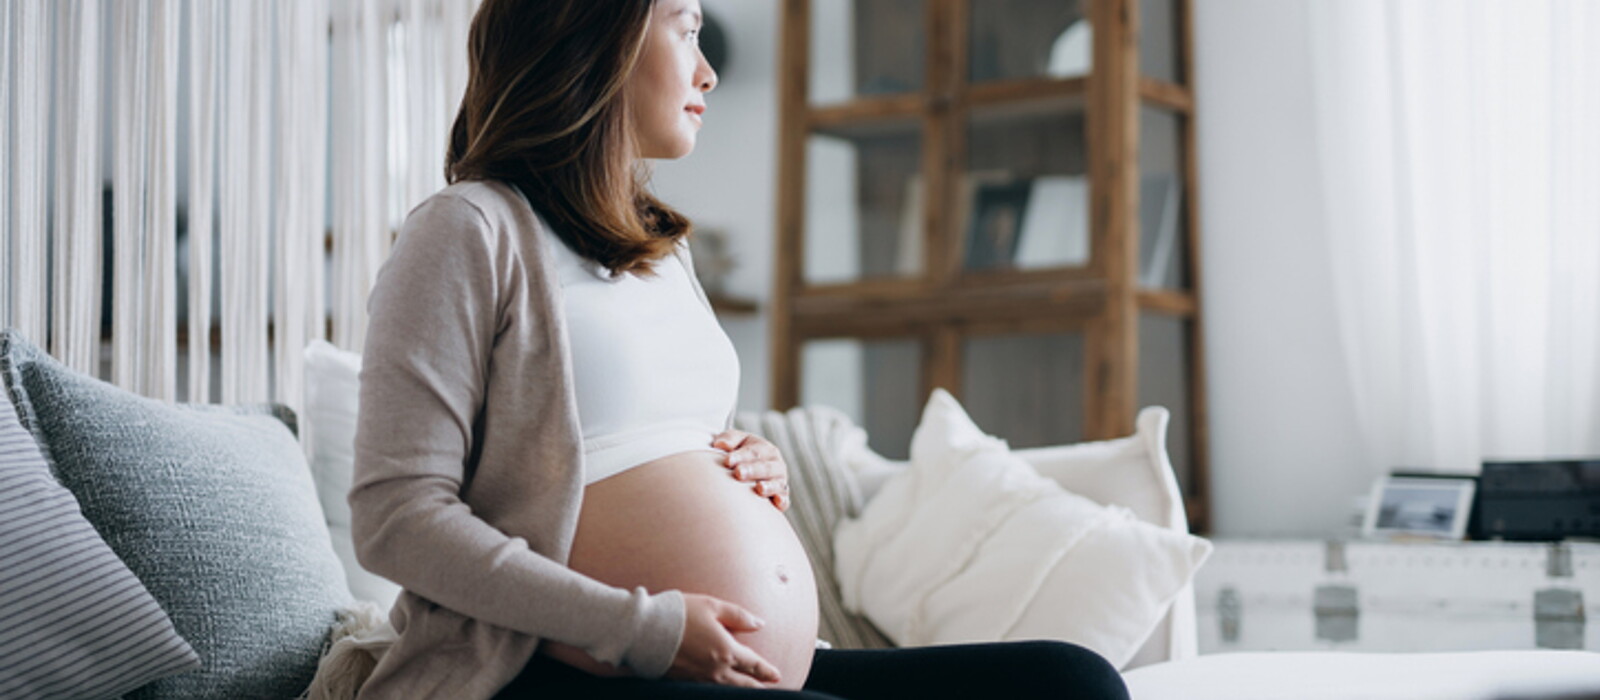 อาการครรภ์เป็นพิษ มีสาเหตุจากอะไร ภาวะอันตรายที่คุณแม่ควรระวัง